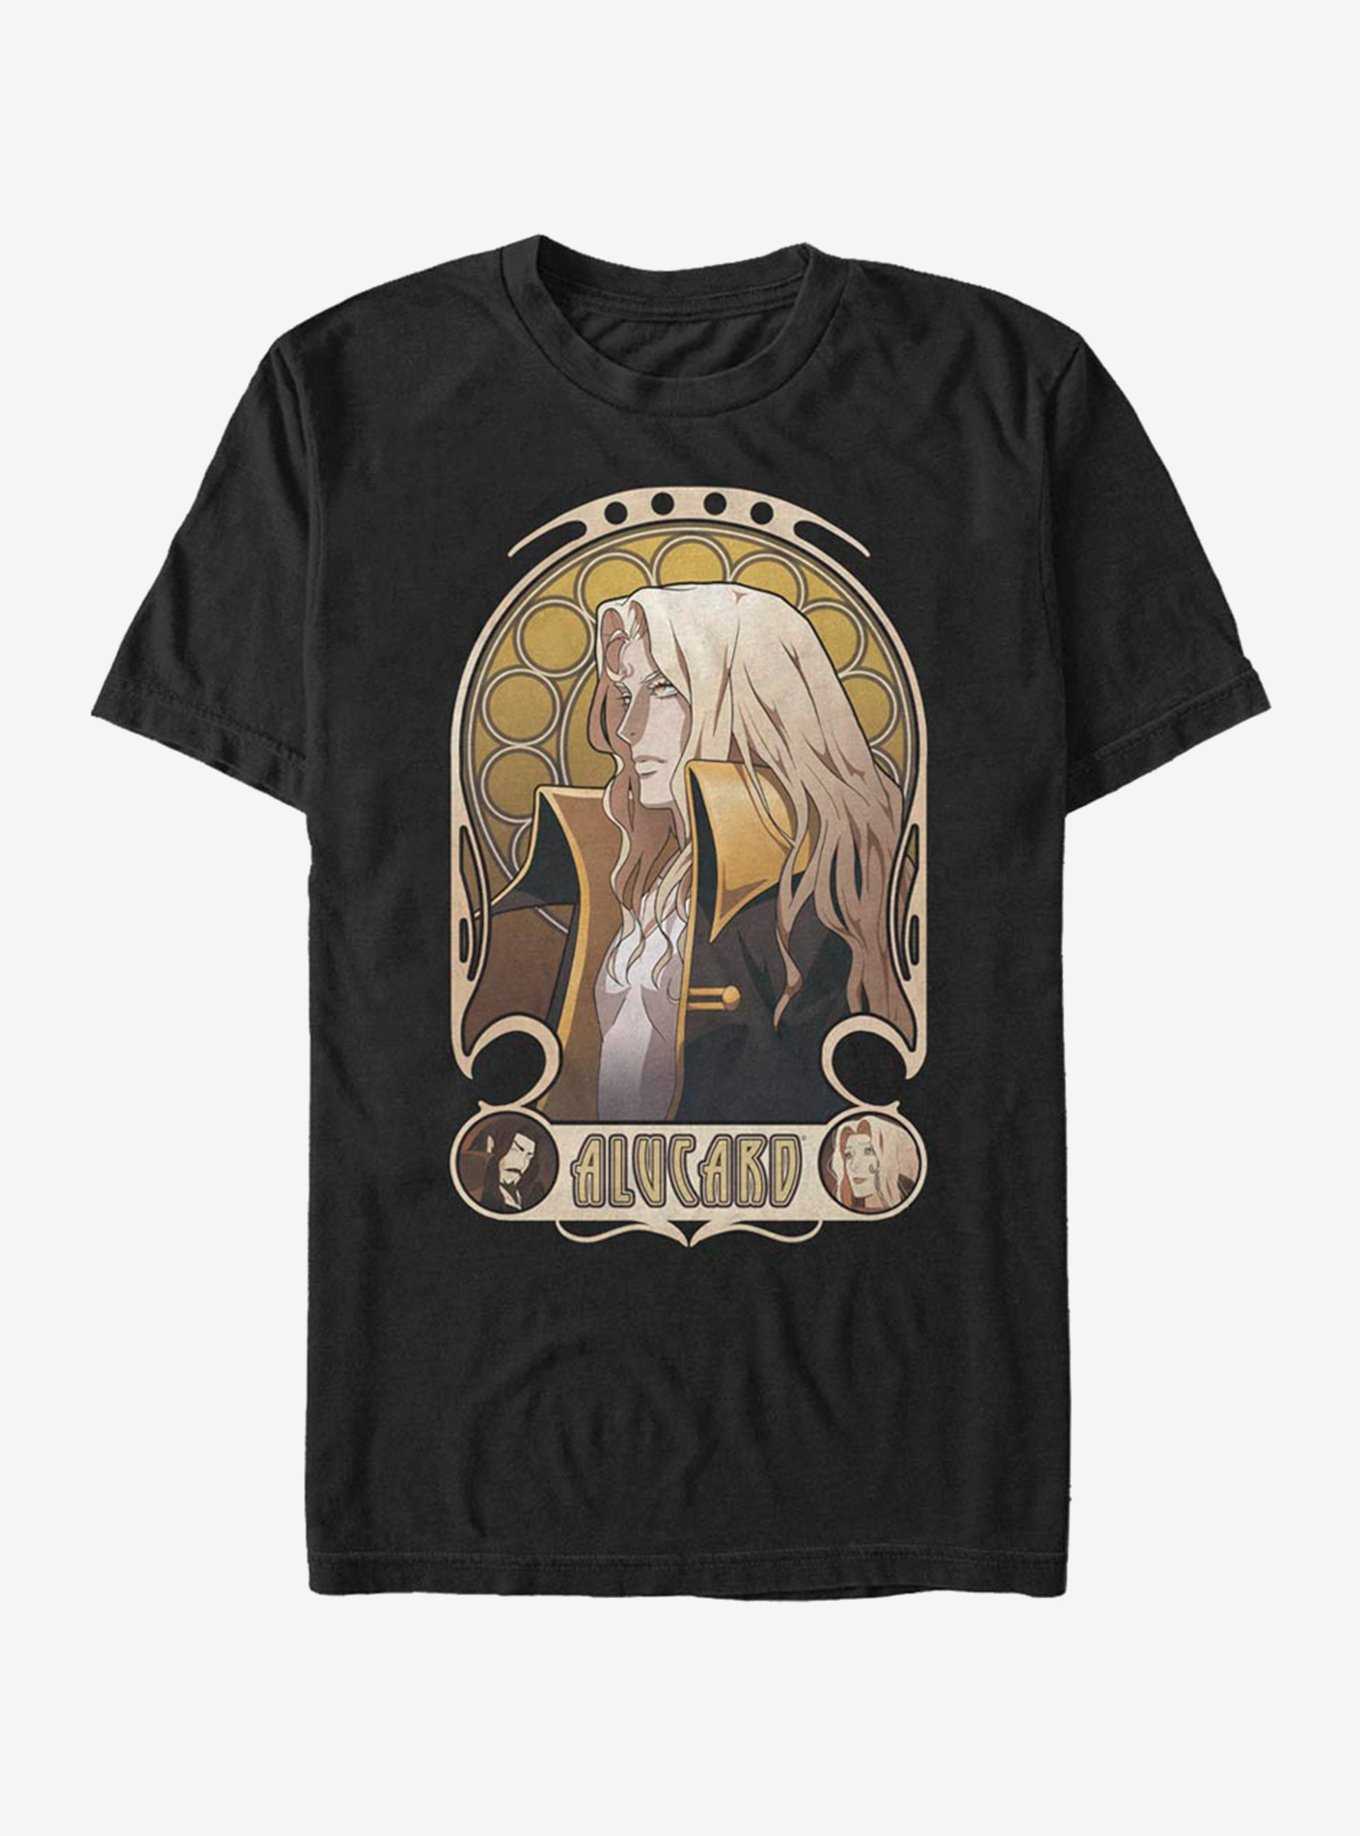 Castlevania Alucard Nouveau T-Shirt, , hi-res